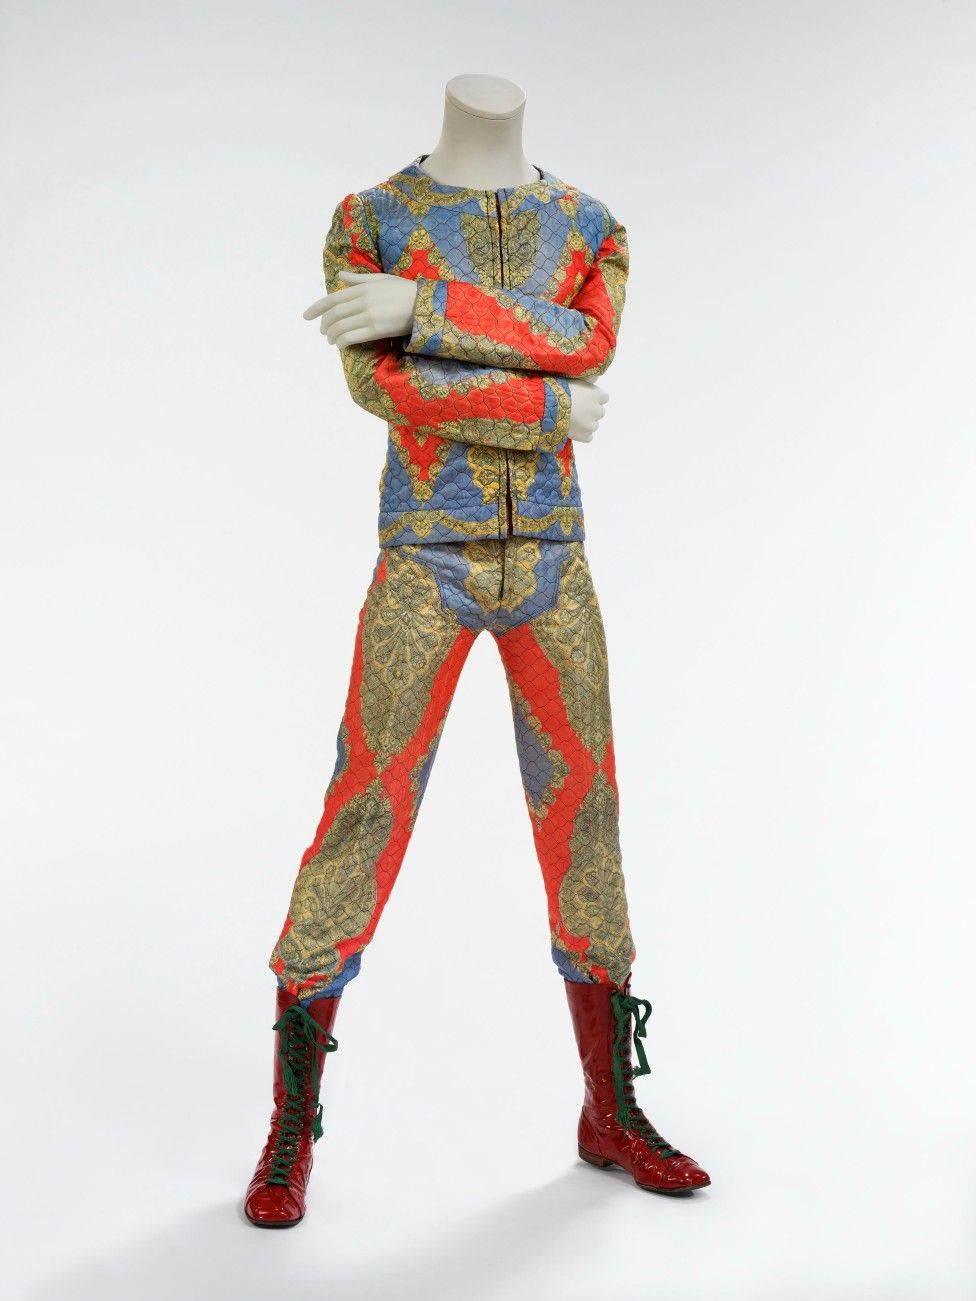 Un colorato completo trapuntato indossato da Bowie nel periodo di Ziggy Stardust, all'inizio degli anni '70